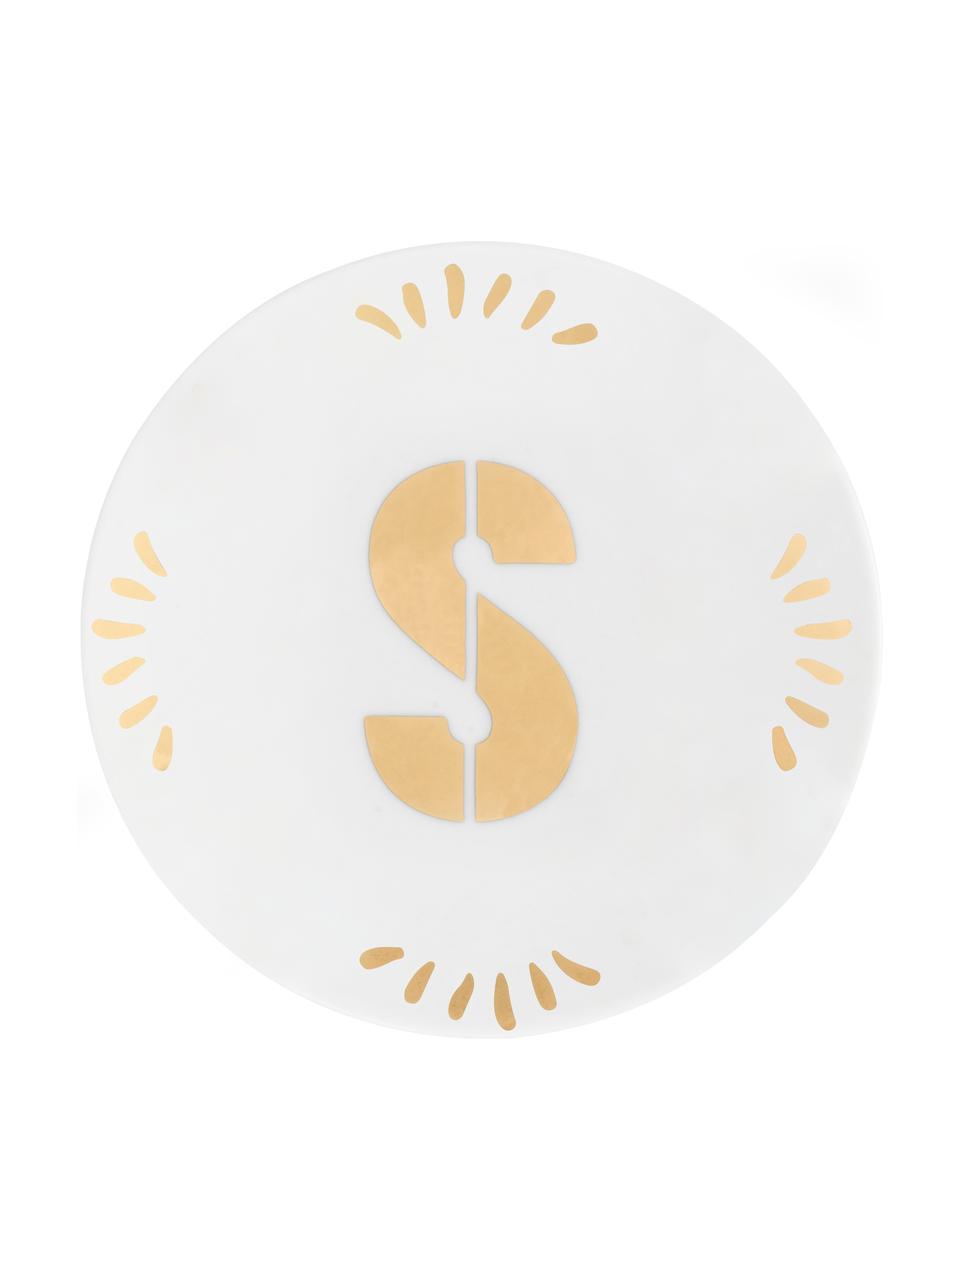 Malý porcelánový talíř na pečivo s písmenem Yours (varianty od A do Z), Porcelán, Bílá, zlatá, Talíř S